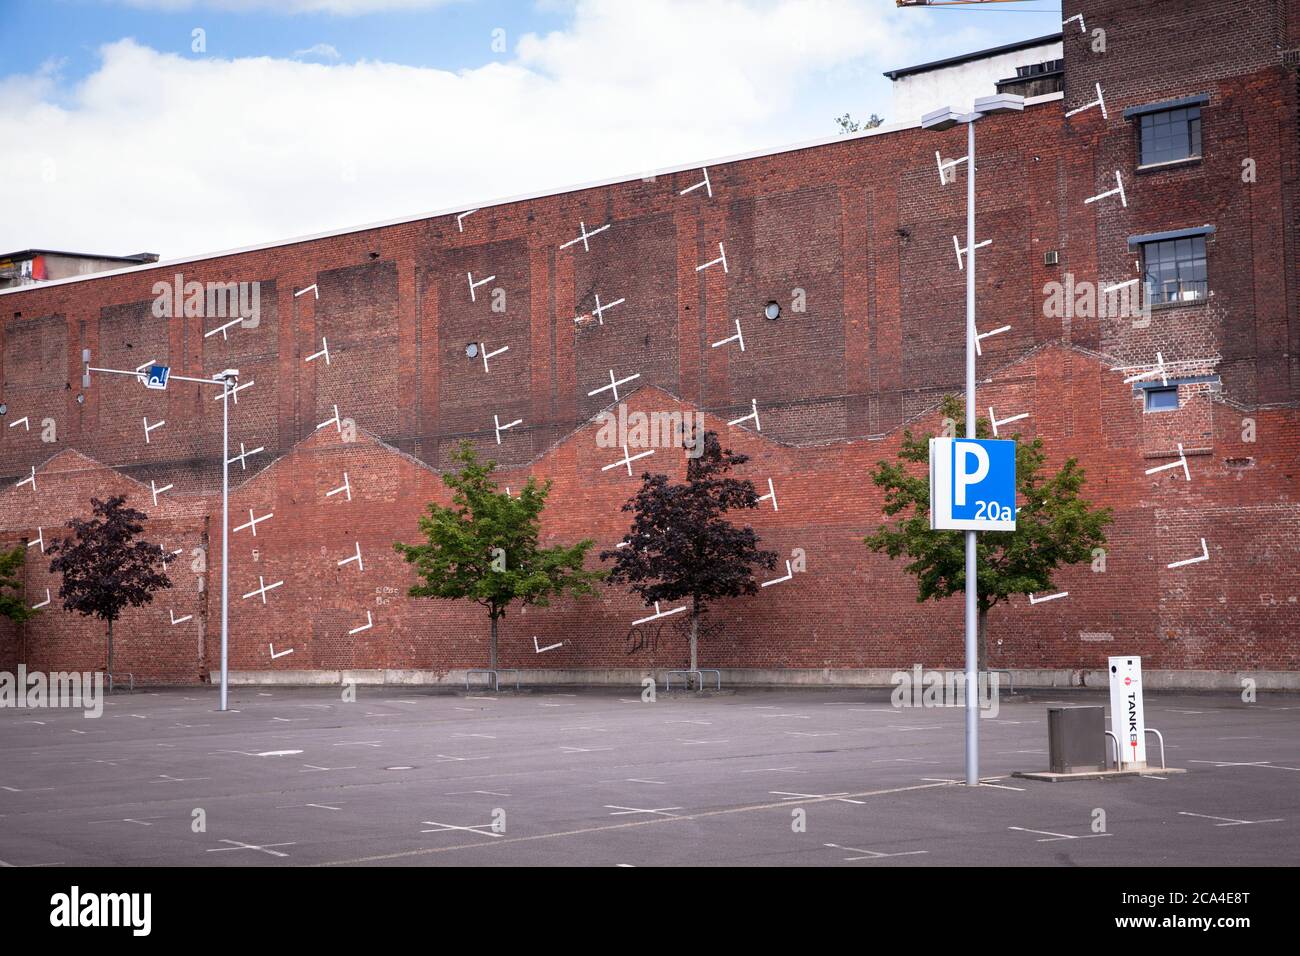 Parcheggio verticale dipinto del progetto architettonico di Colonia su un muro di mattoni vicino alla fiera di Deutz, Colonia, Germania. Aufgemalter vertikal Foto Stock